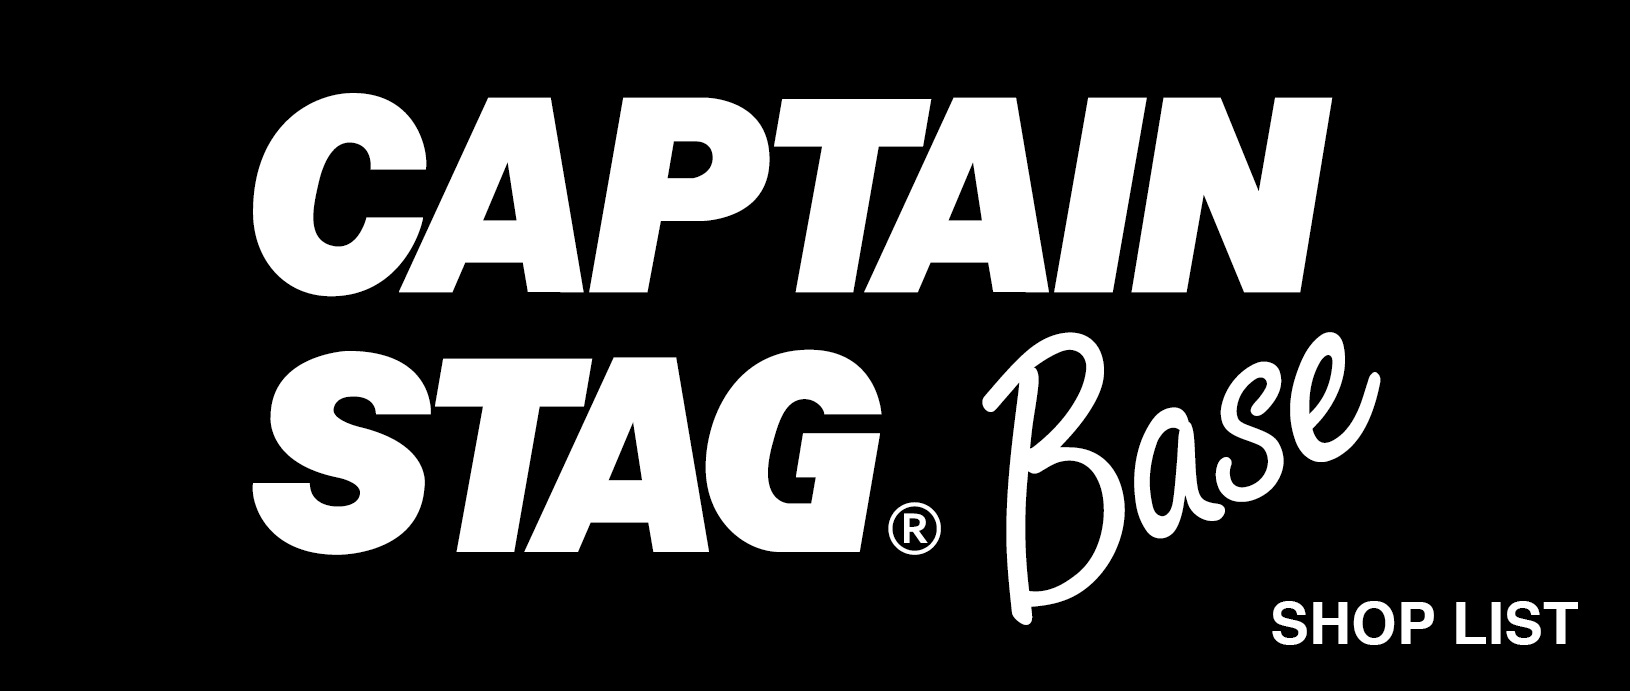 CAPTAIN STAG BASE SHOP LIST